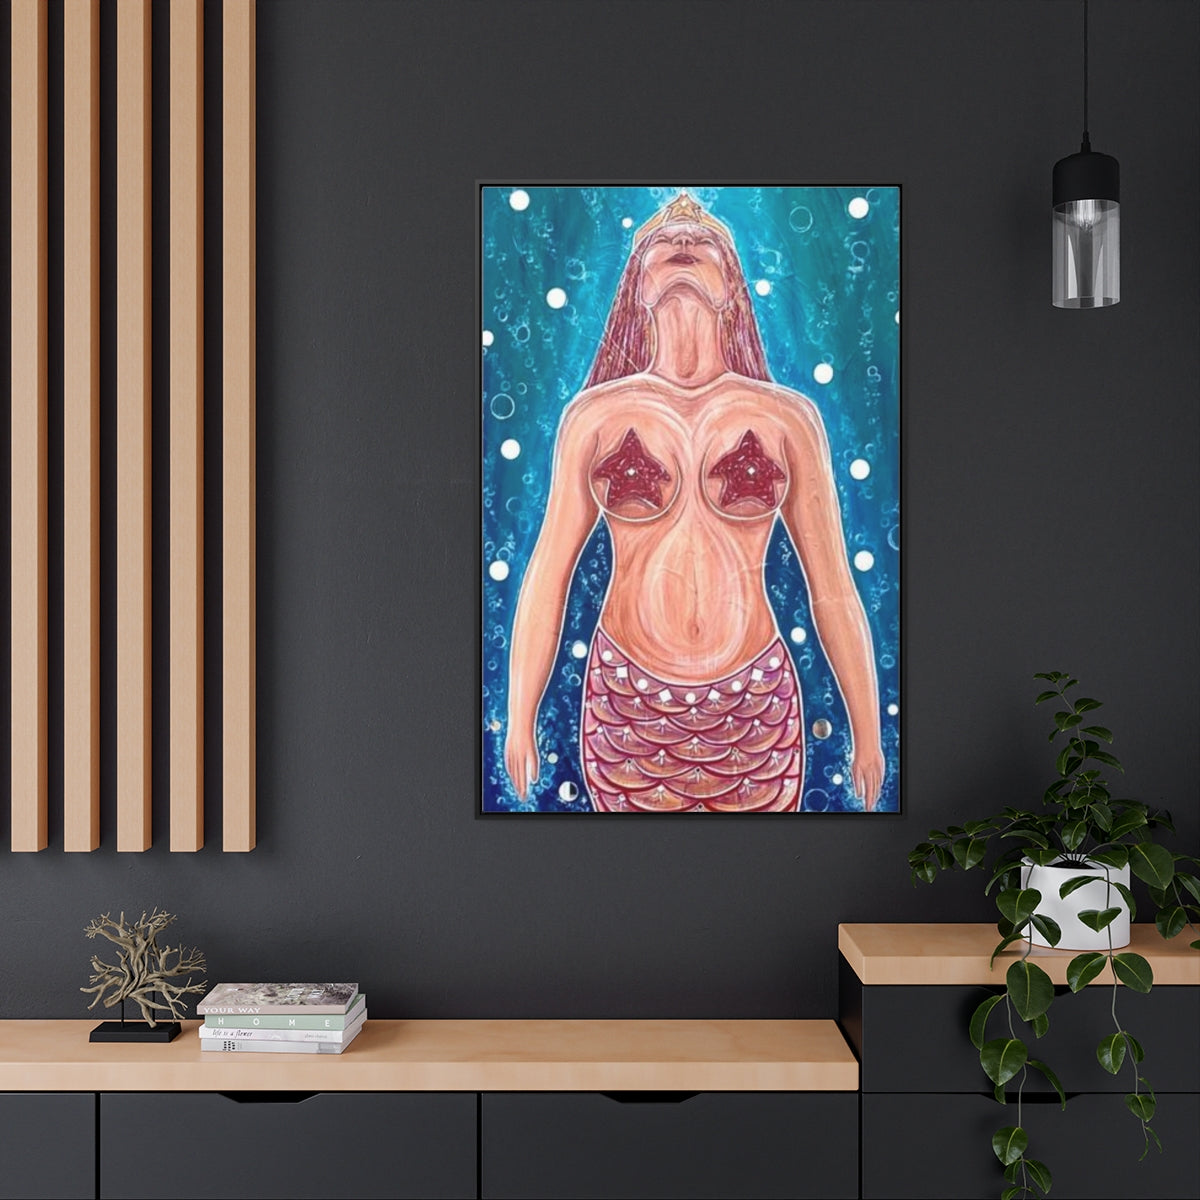 Mermaid Ocean Art Vertical Framed Gallery Wrapped Canvas Print